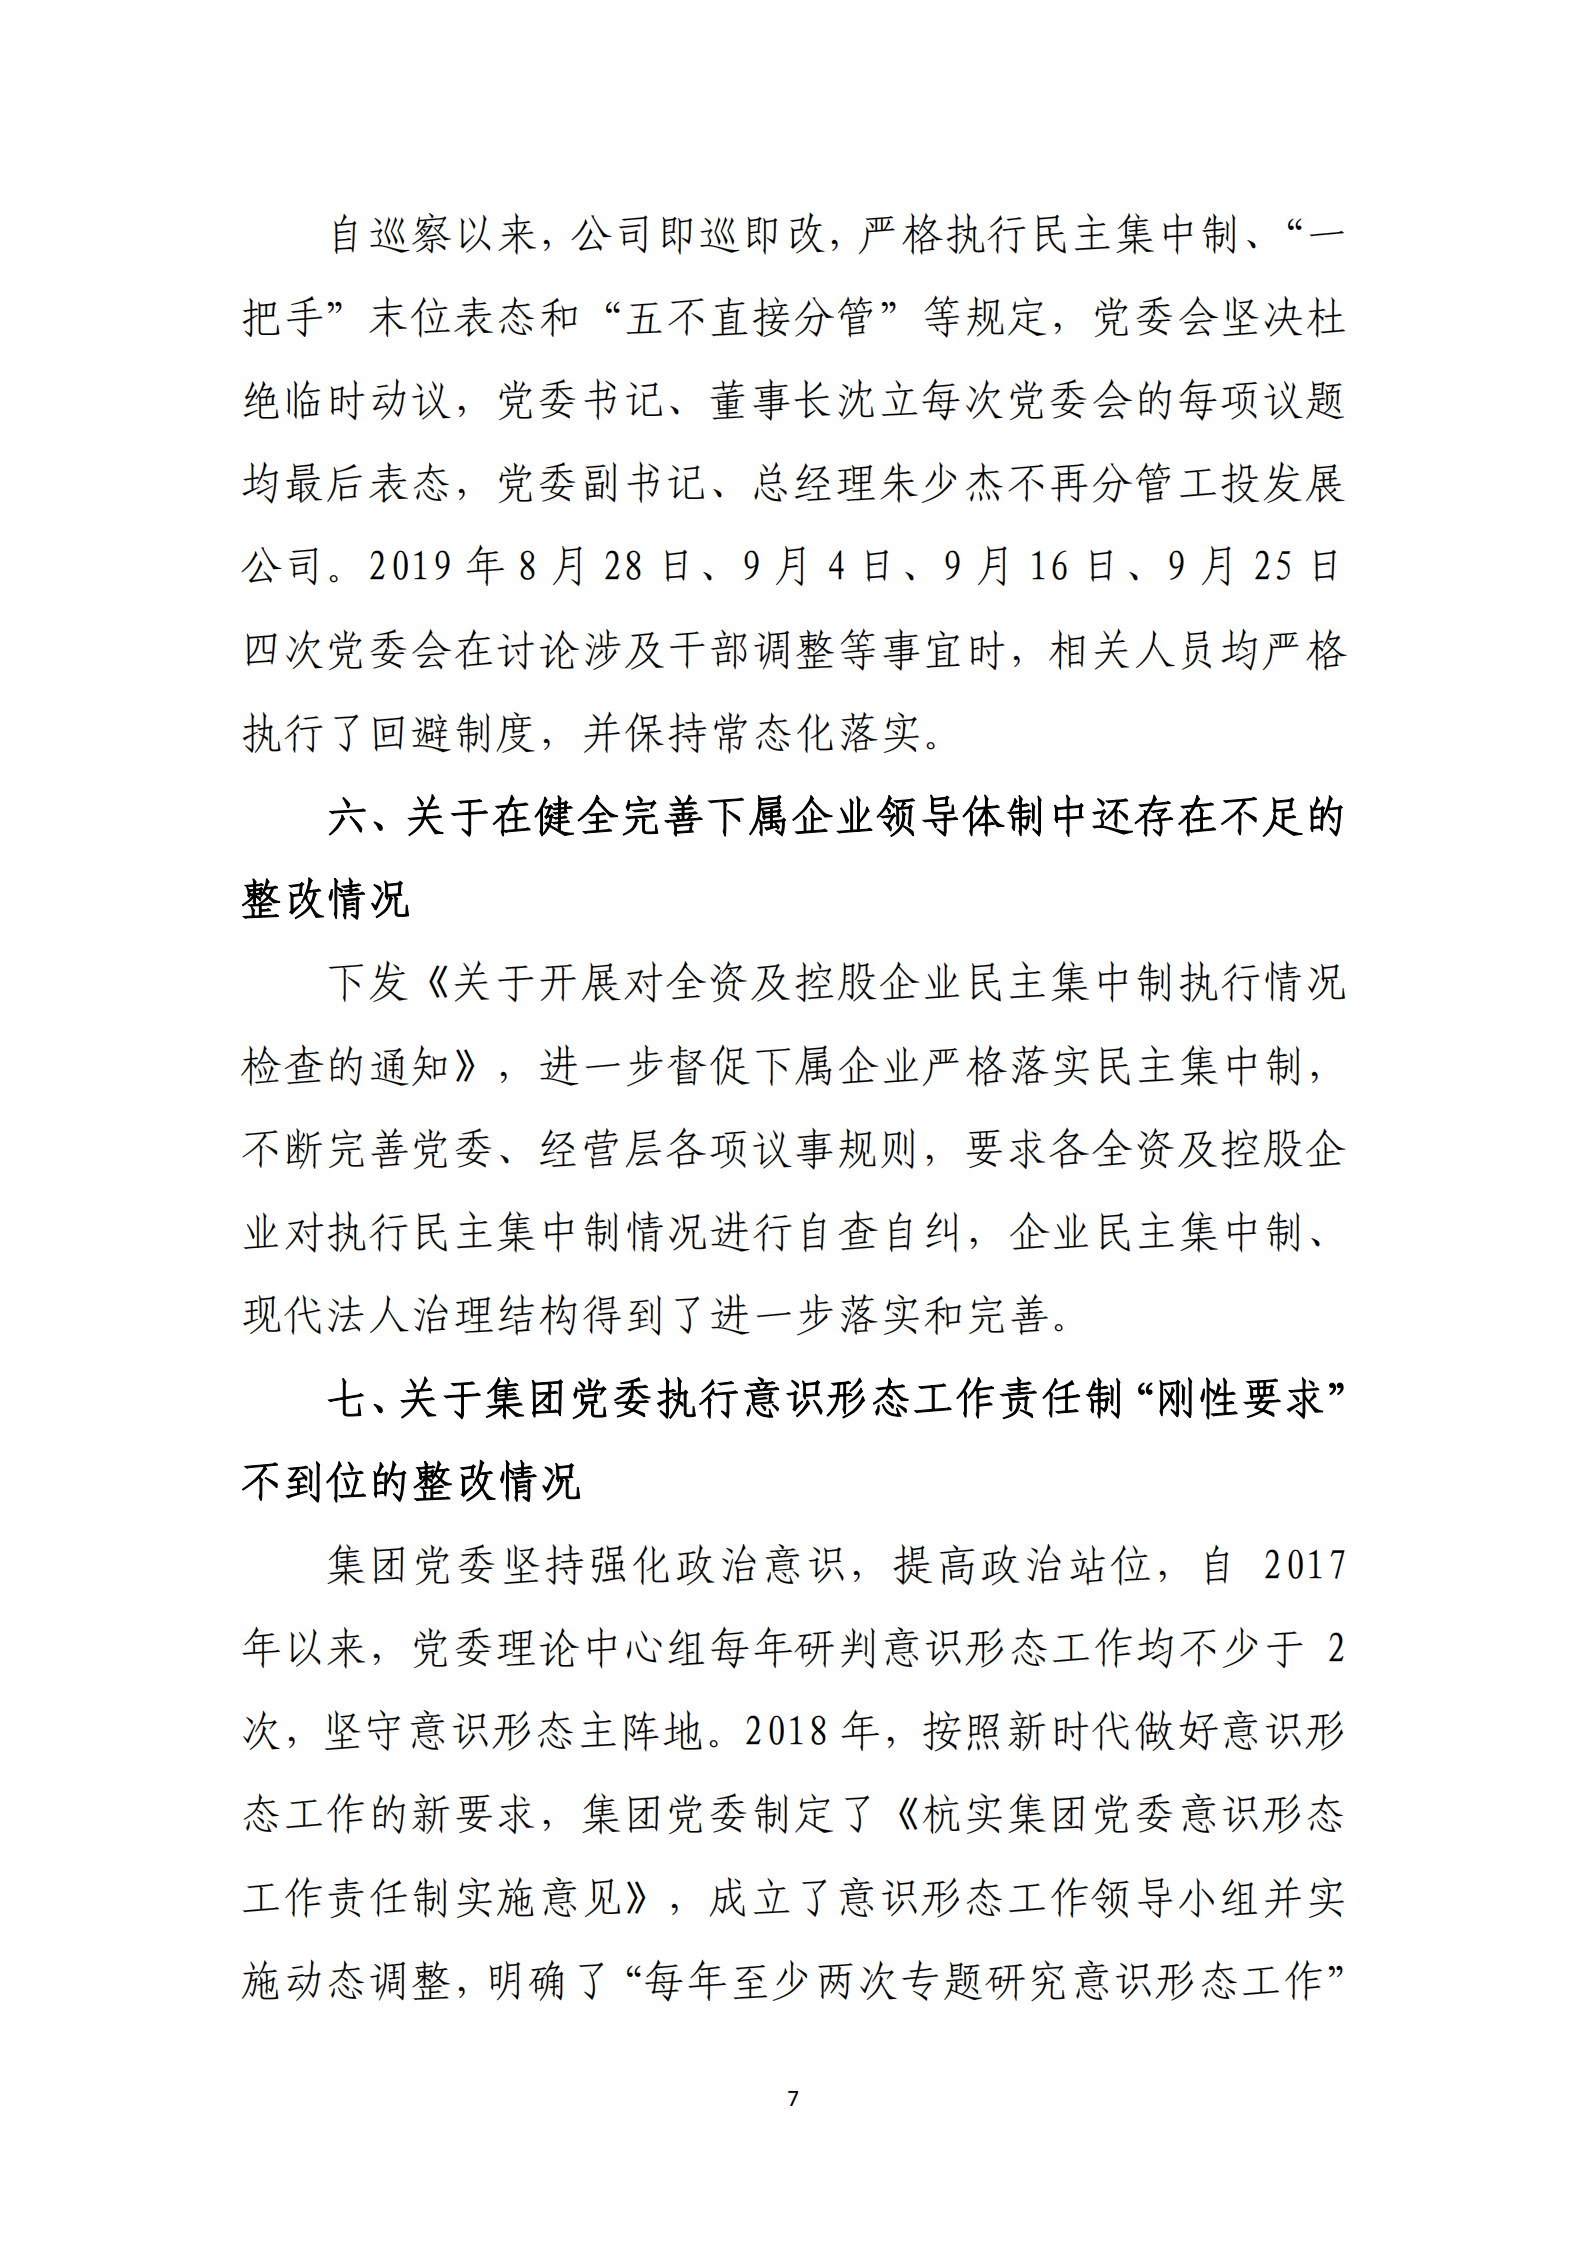 大阳城集团娱乐游戏党委关于巡察整改情况的通报_06.png